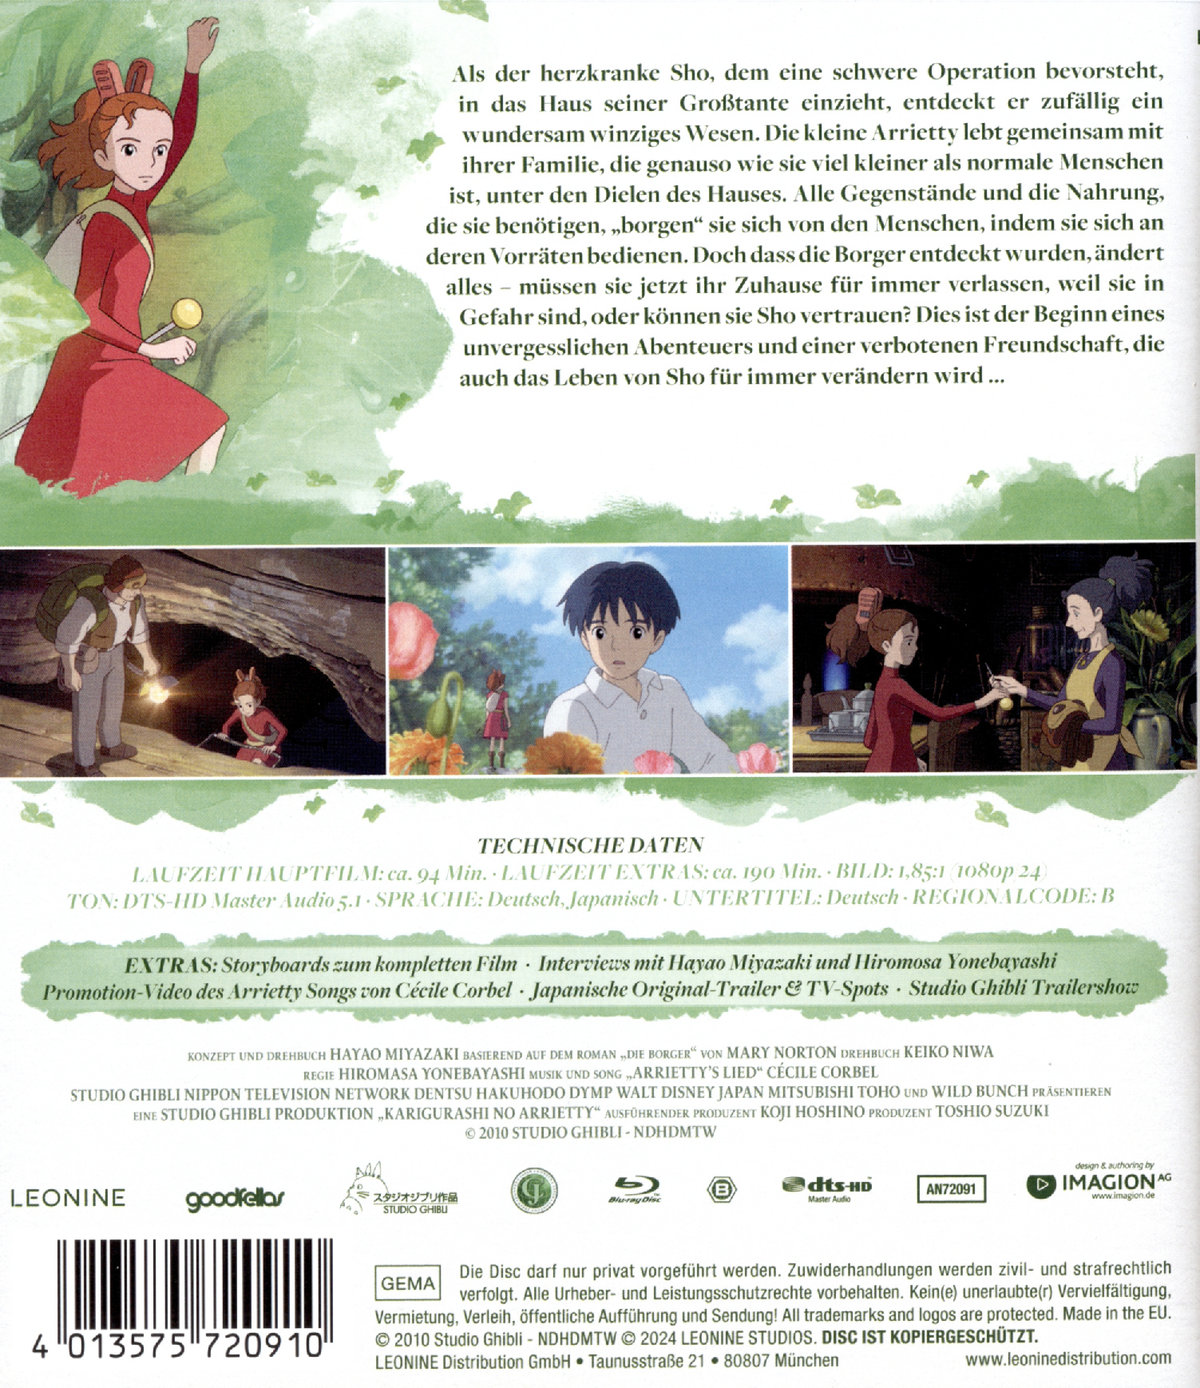 Arrietty - Die wundersame Welt der Borger - White Edition  (Blu-ray Disc)